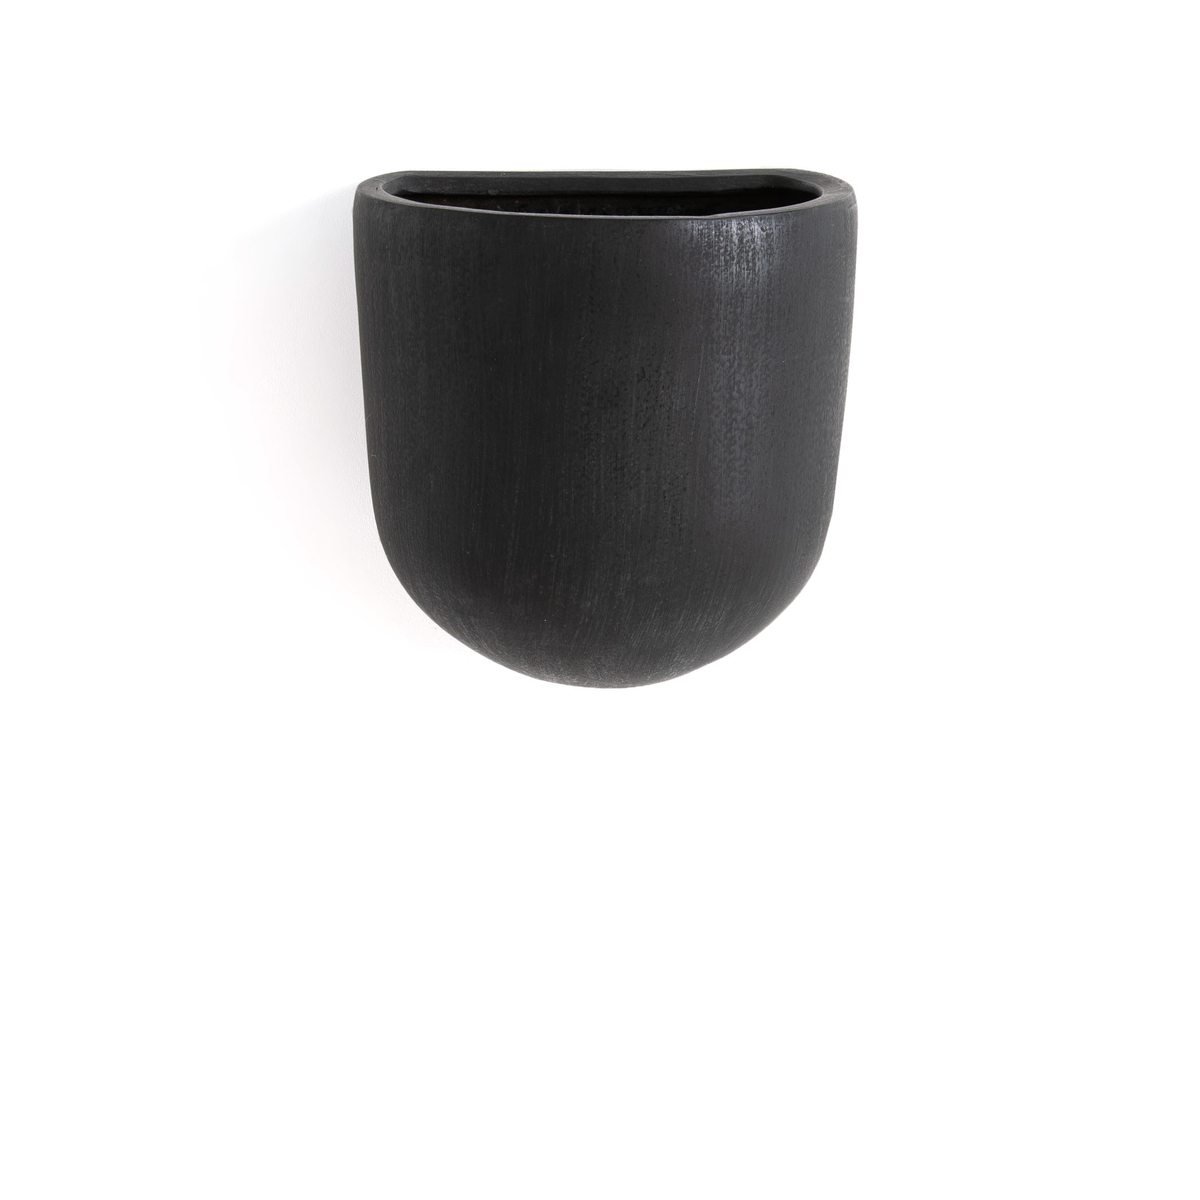 Sira L20 x D16cm Ceramic Wall Flower Pot